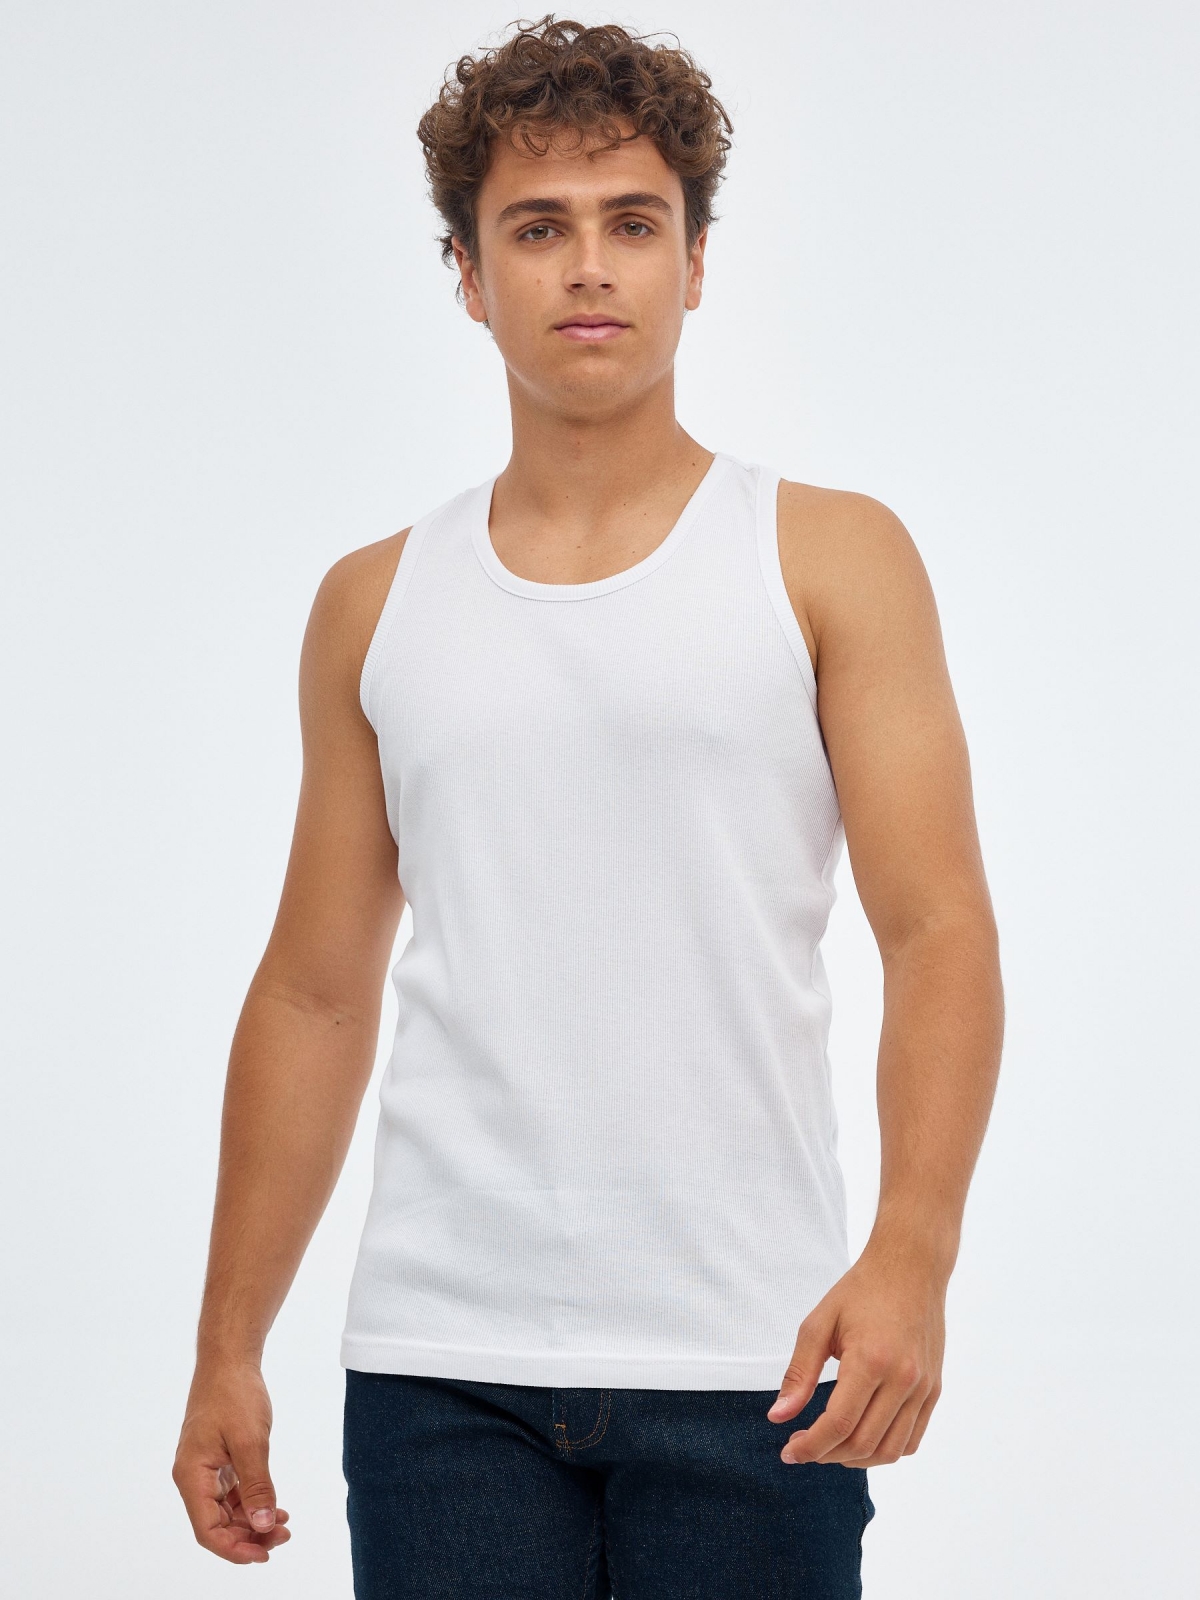 Camiseta básica espalda nadadora blanco vista media frontal